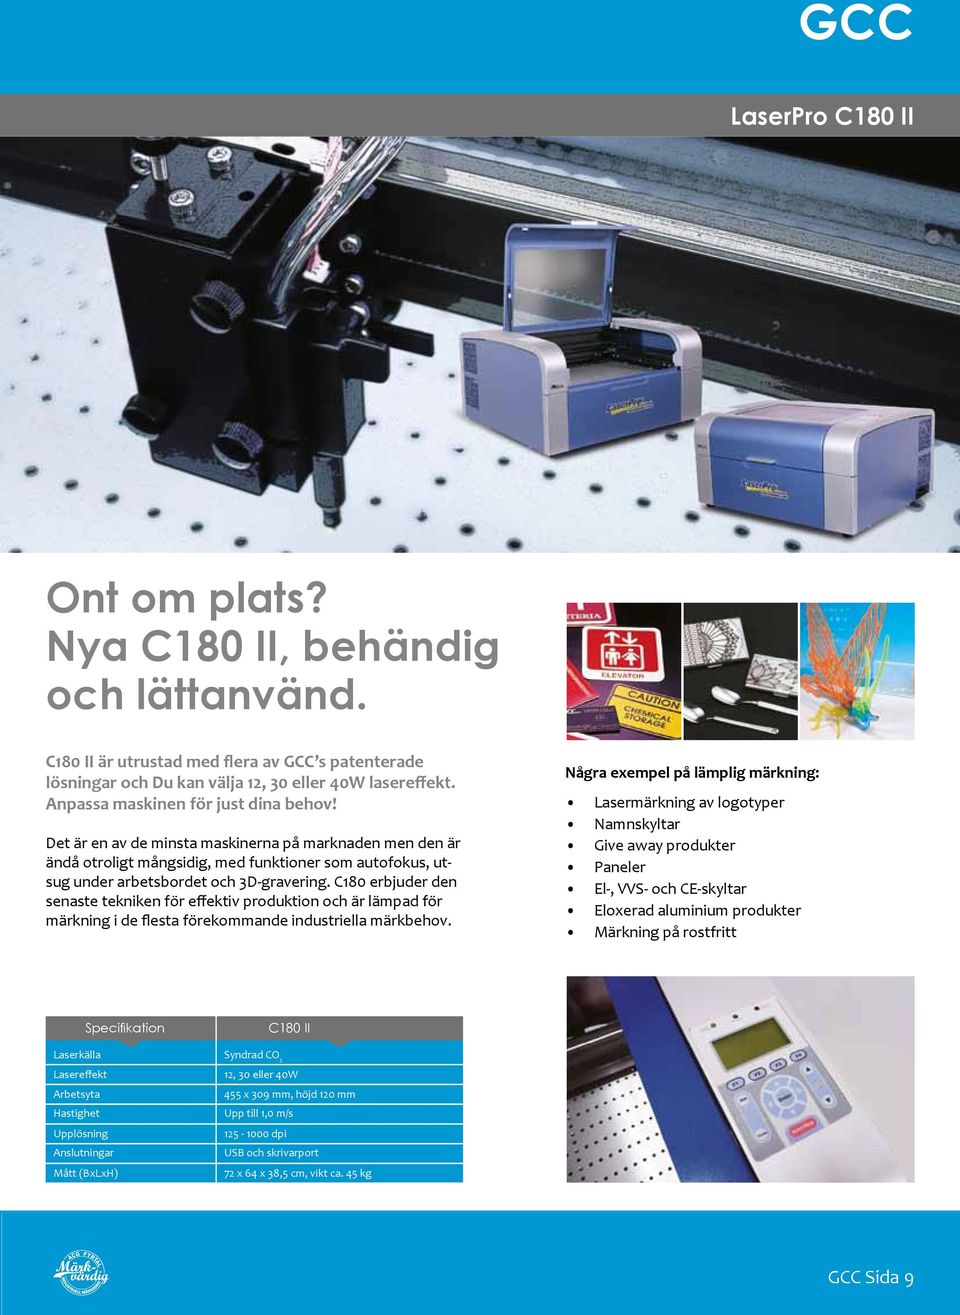 C180 erbjuder den senaste tekniken för effektiv produktion och är lämpad för märkning i de flesta förekommande industriella märkbehov.